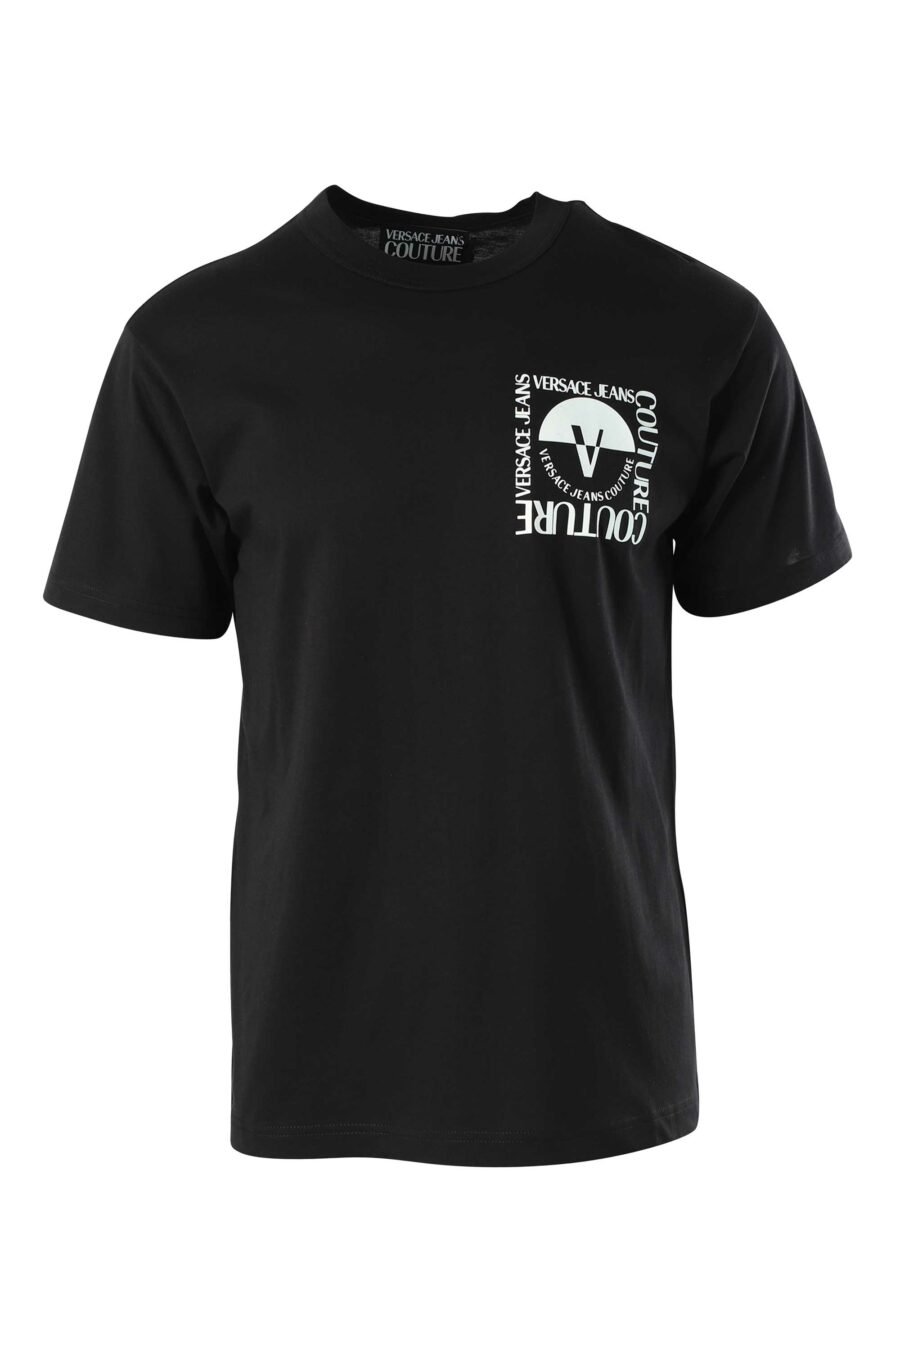 T-shirt noir avec minilogue noir et blanc - 8052019325522